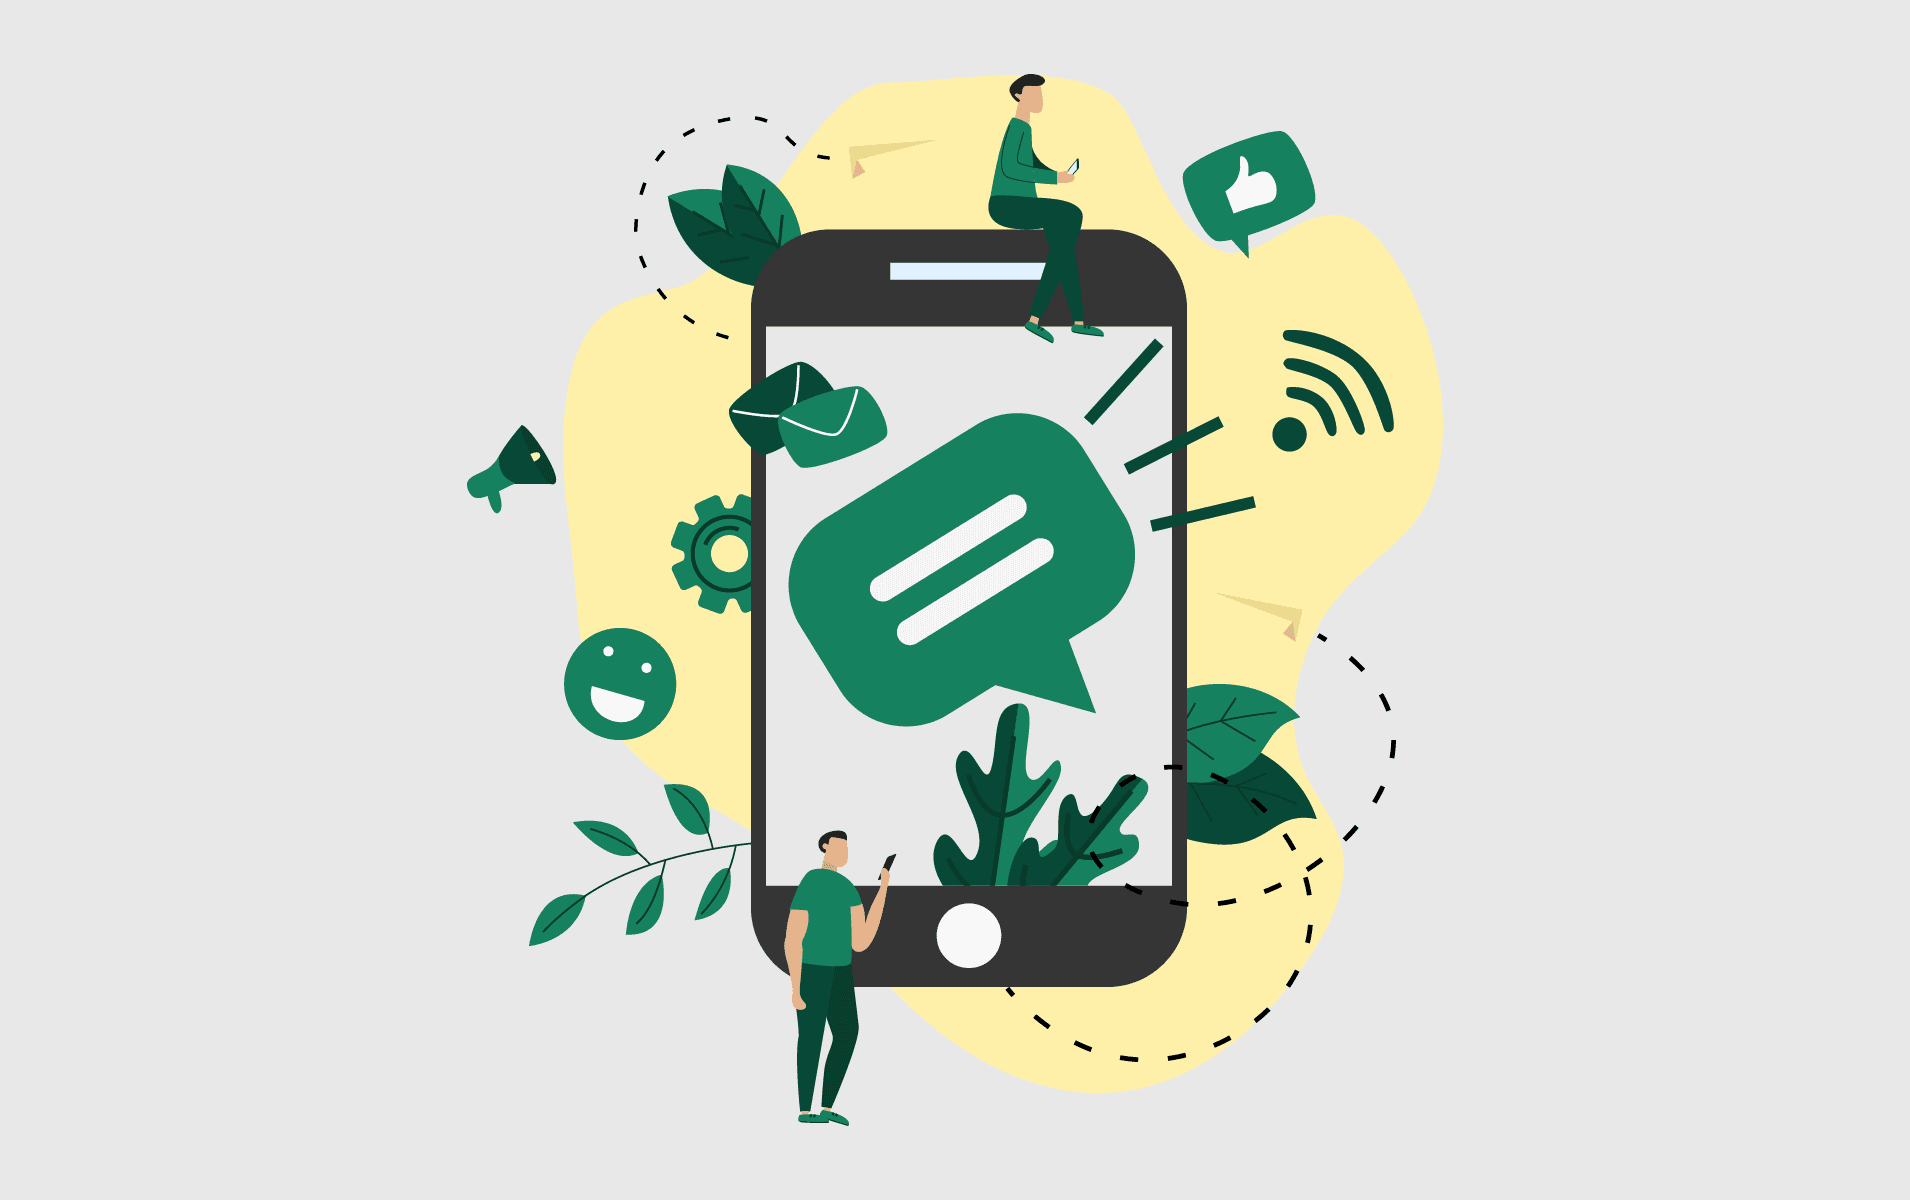 Business text message app concept